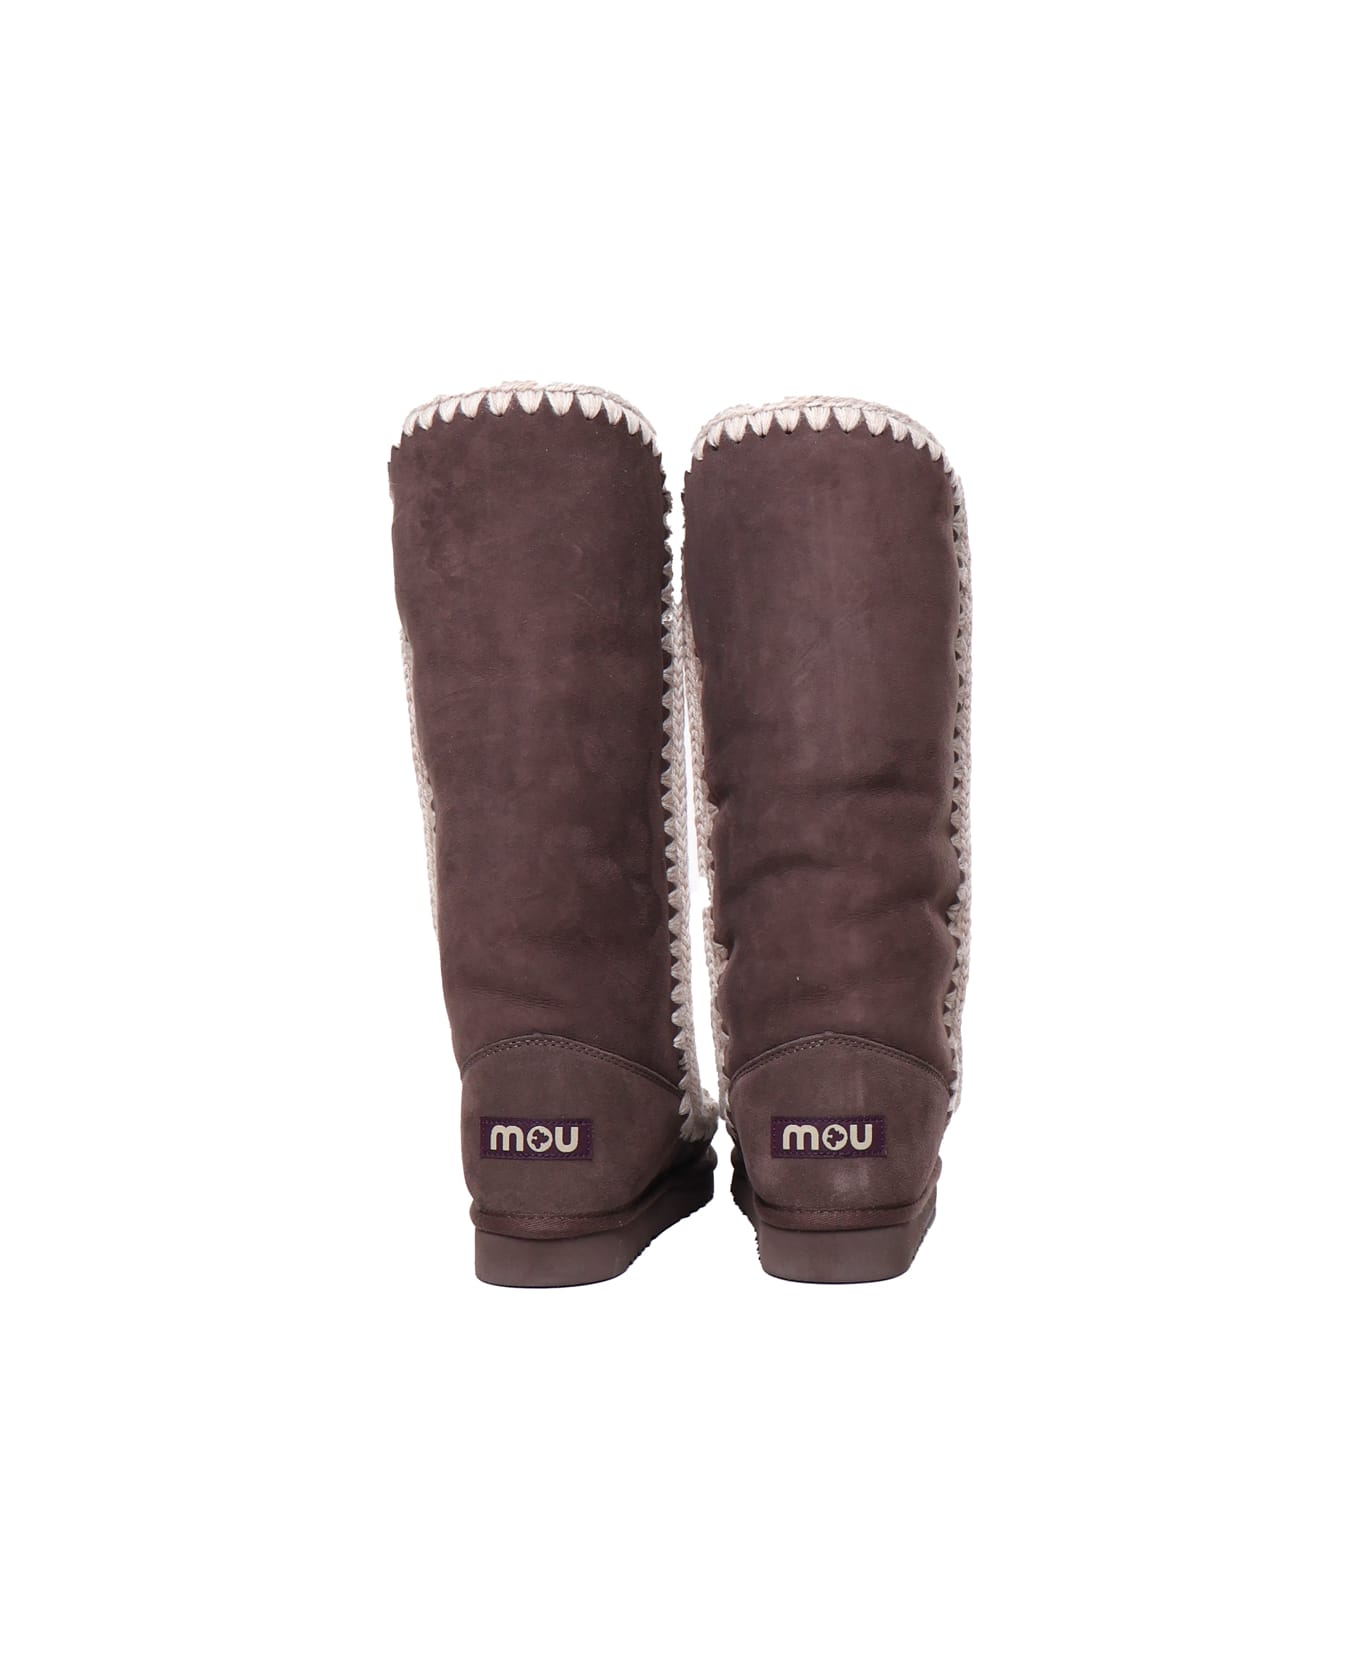 Mou Eskimo Boots 40 - Dark brown ブーツ